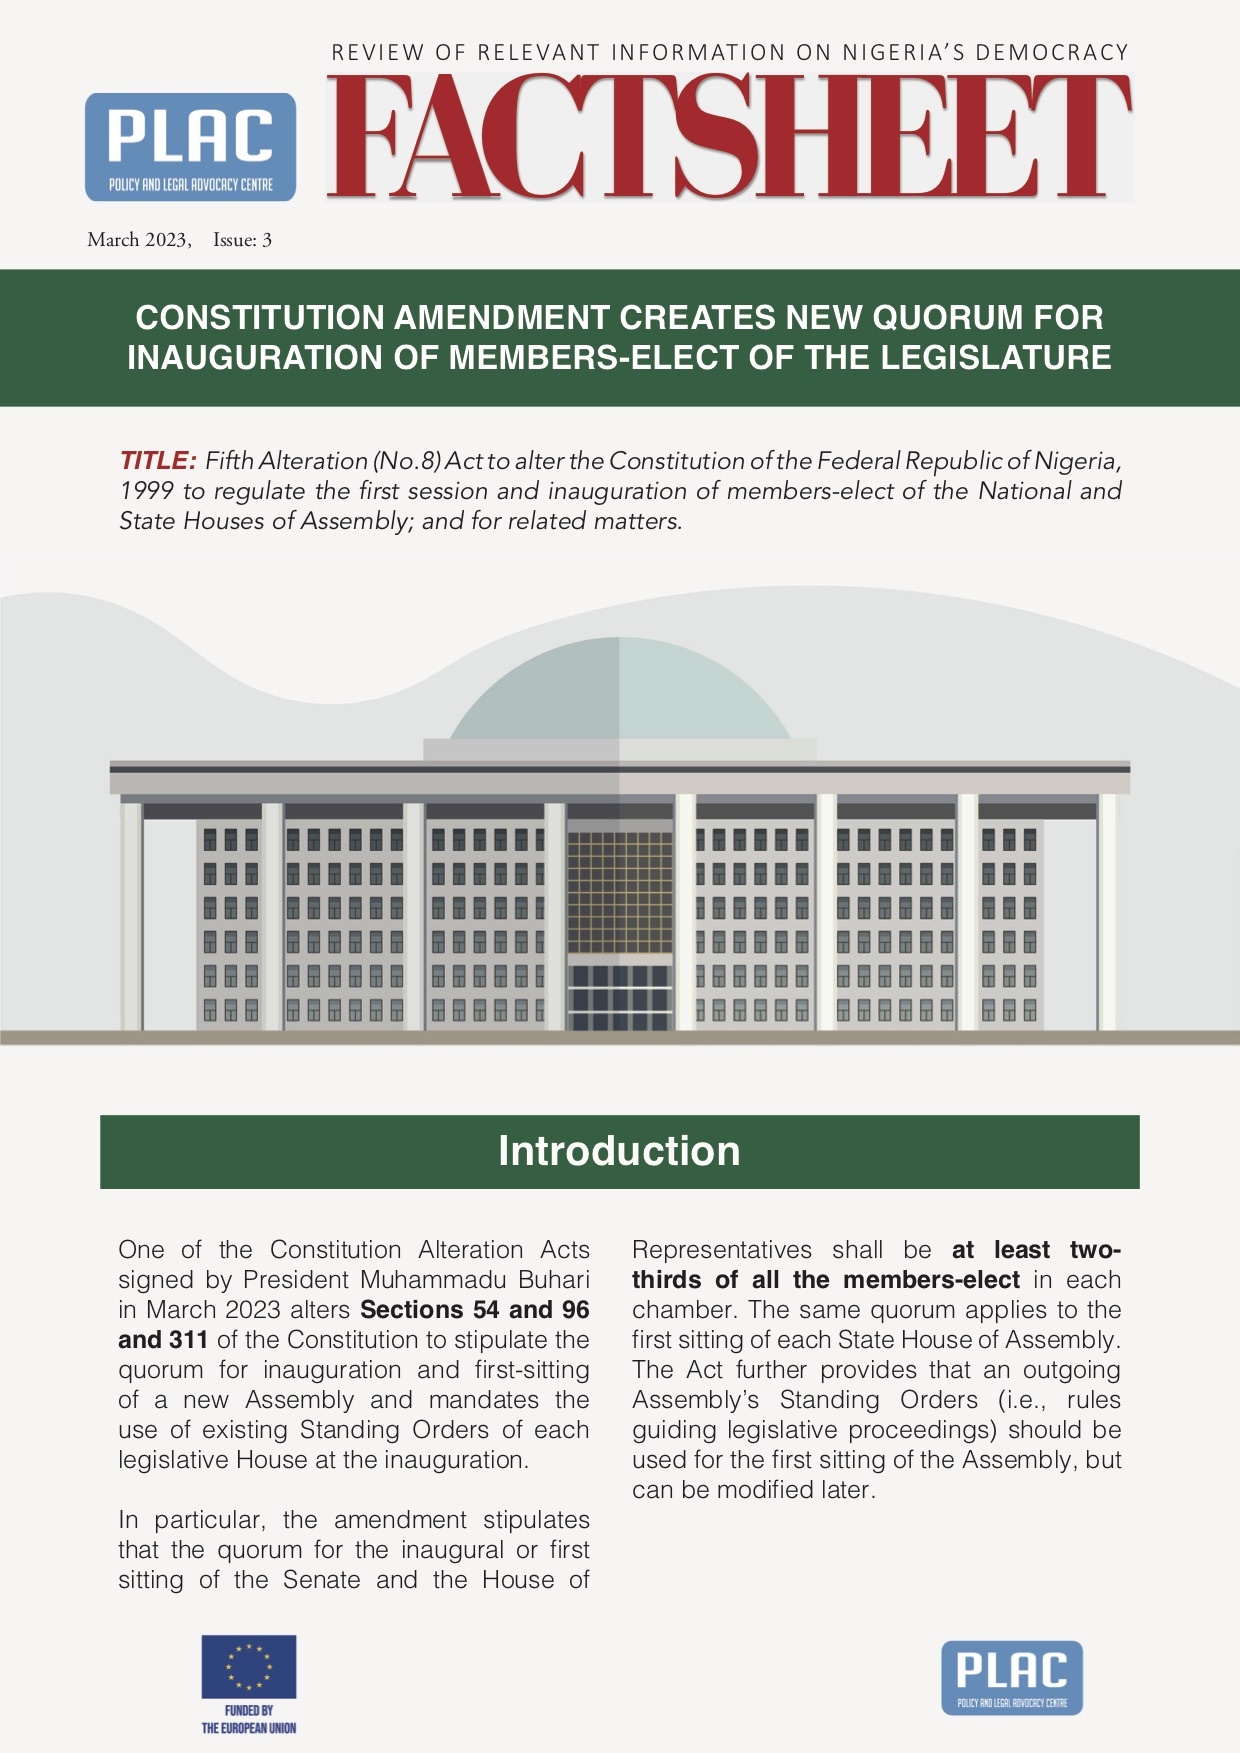 Constitution Amendment Creates new Quorum for Inauguration of Members-Elect of the Legislature